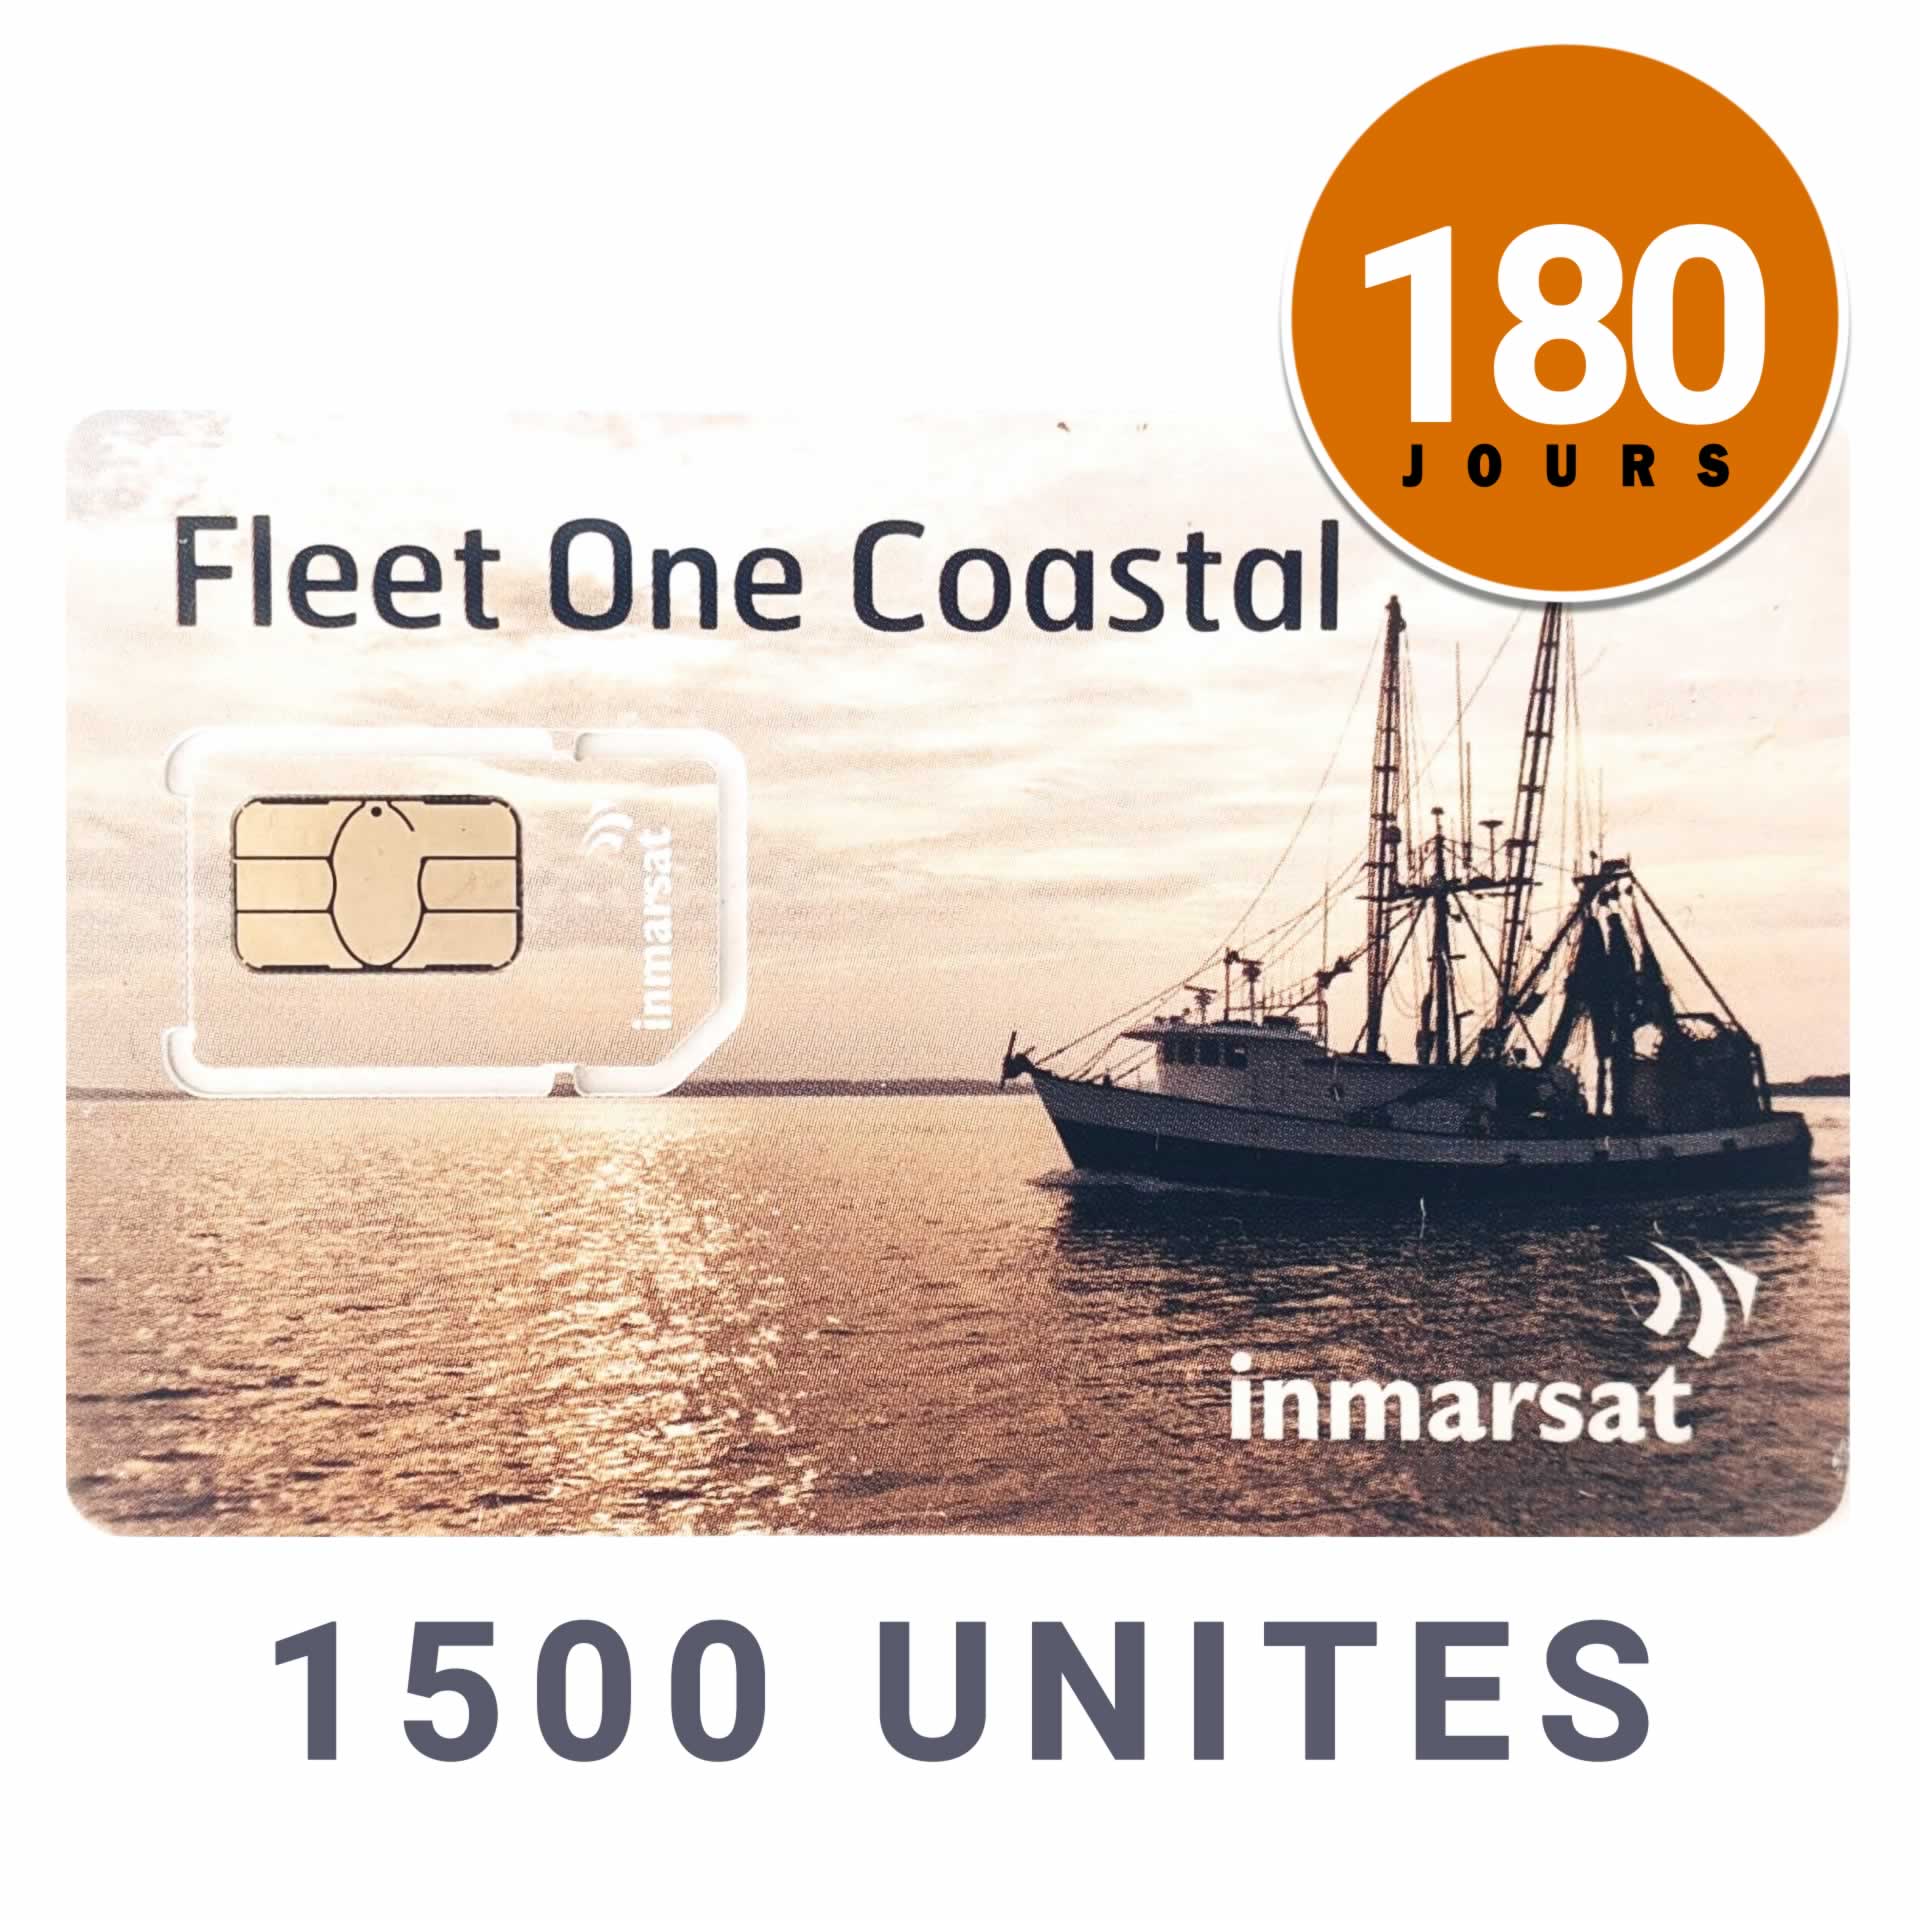 INMARSAT Prepaid Card CÔTIER FLEET ONE - 1500 UNITS - 180 DAYS